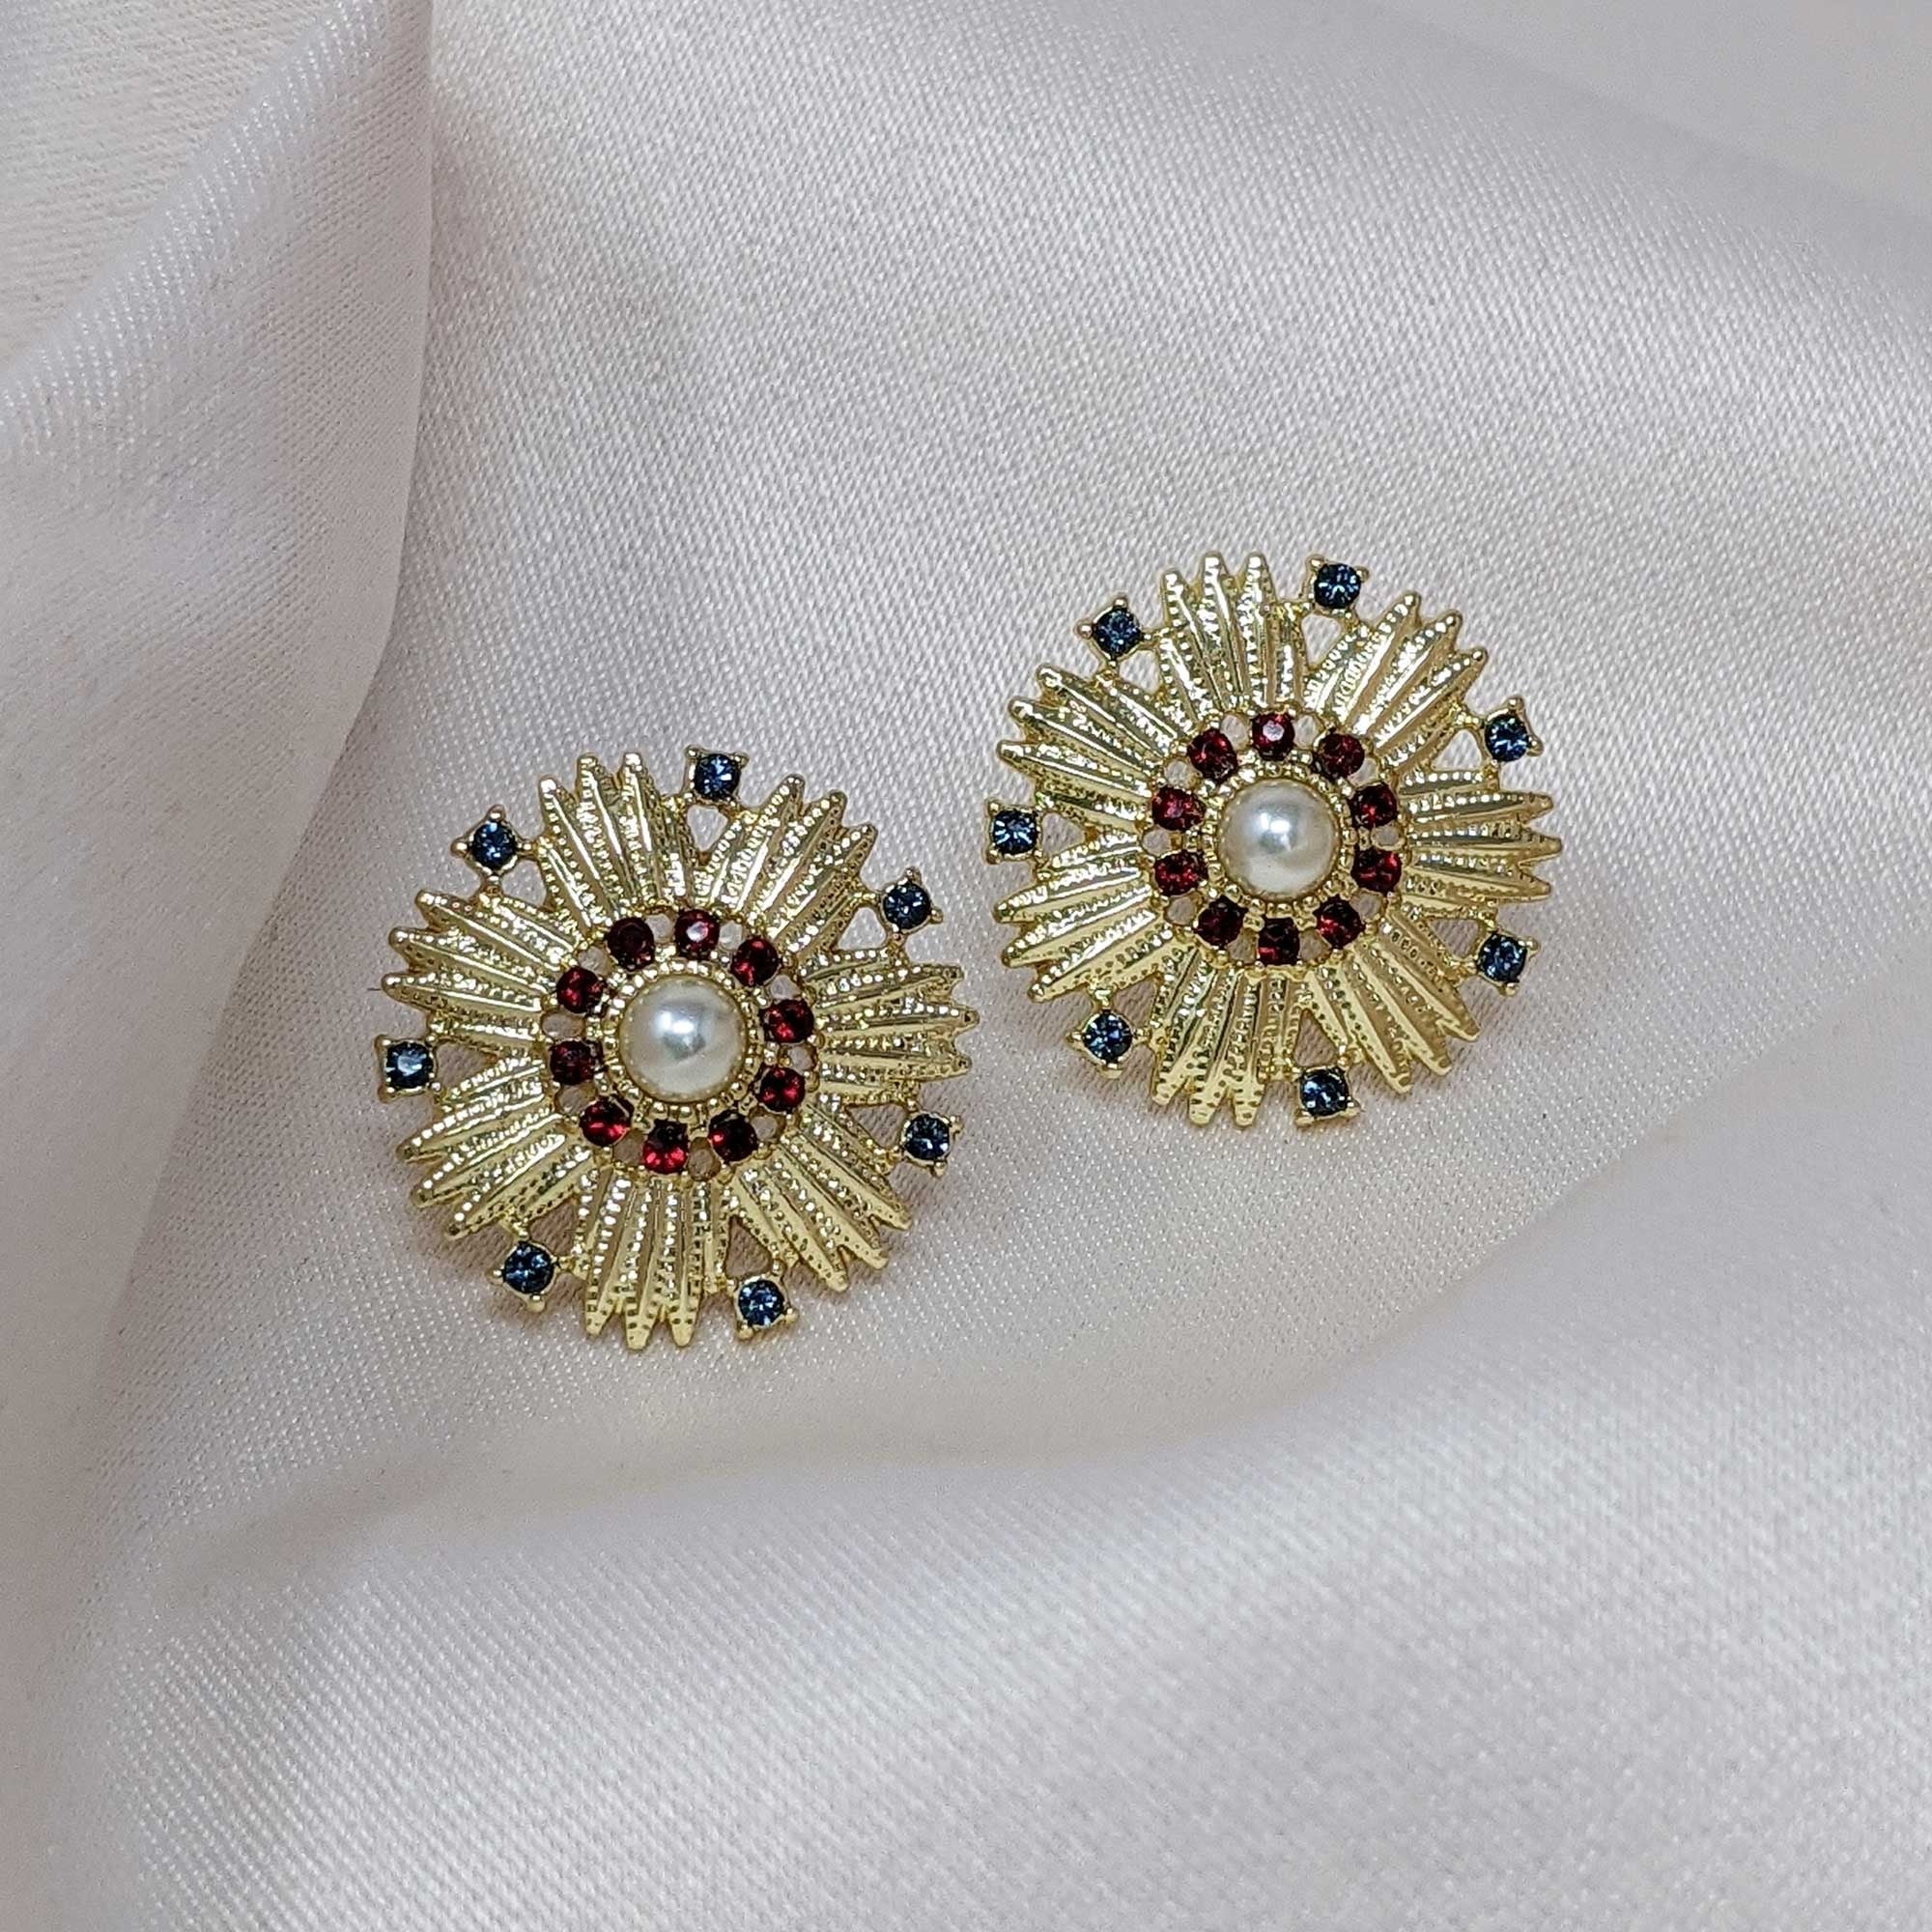 Lovett Heirloom Earrings - Cordelia Swarovski ®️ Crystal Starburst Earrings